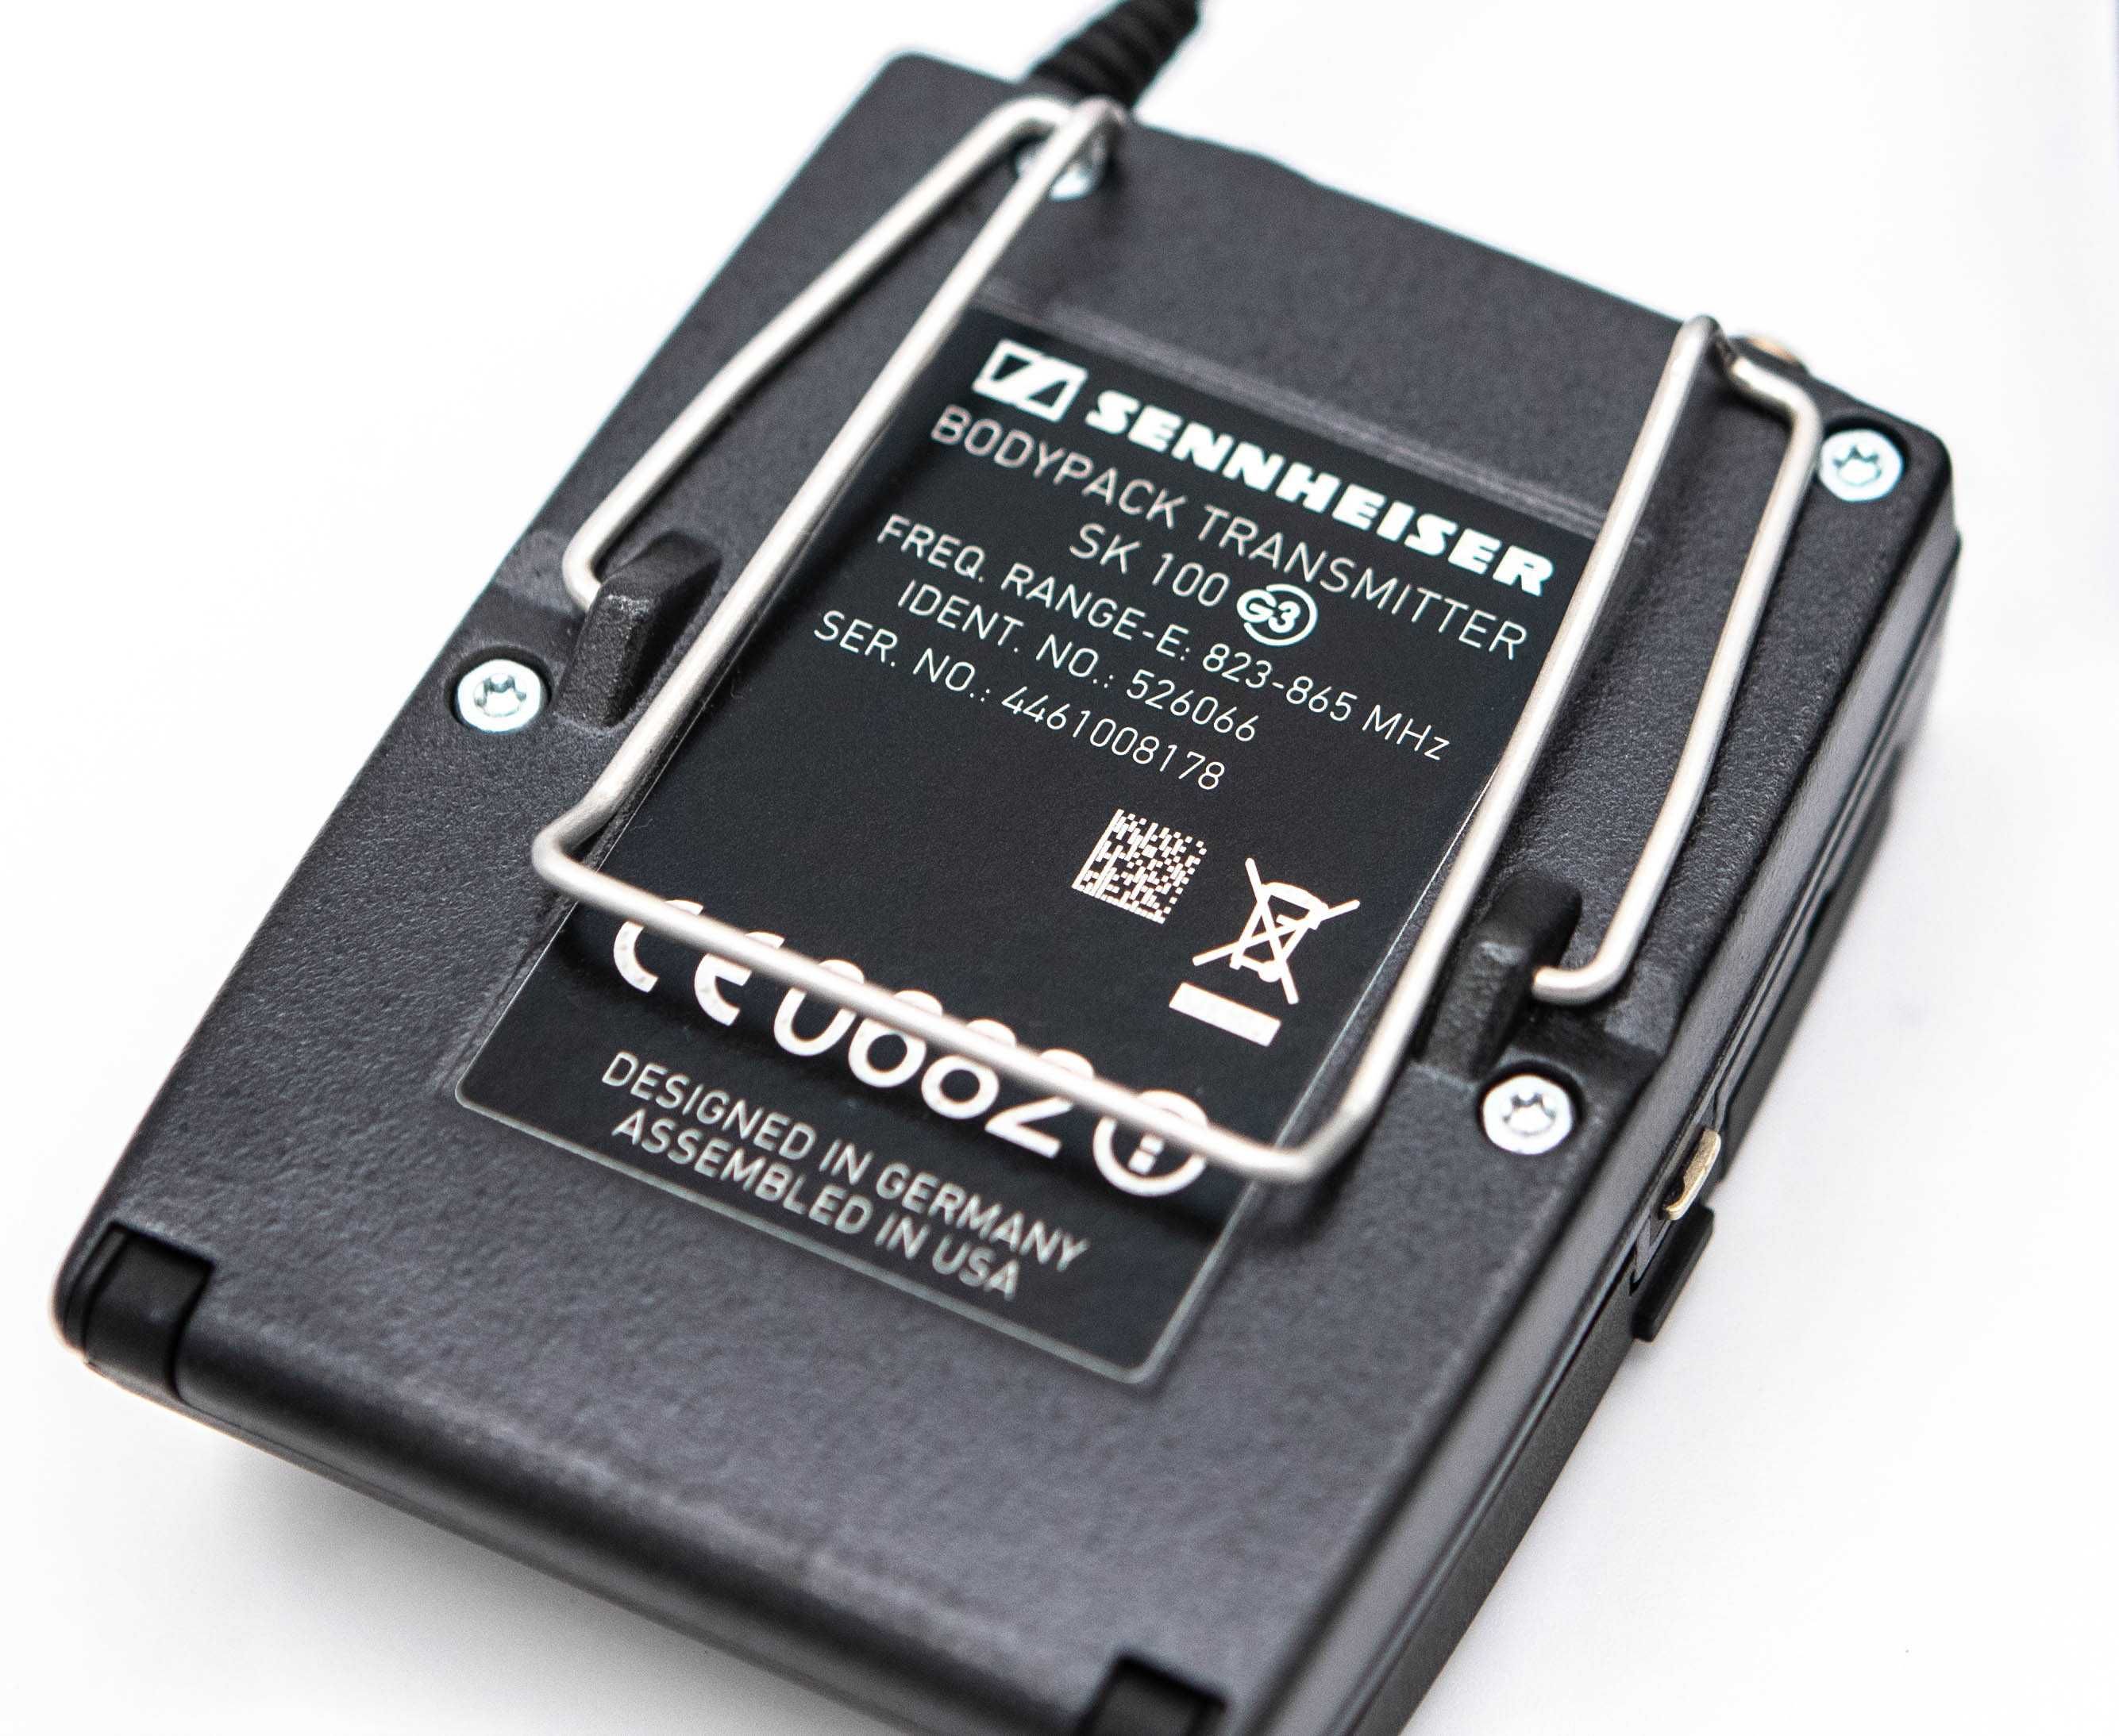 Zestaw bezprzewodowy Sennheiser EW 100 G3 823 – 865 MHz